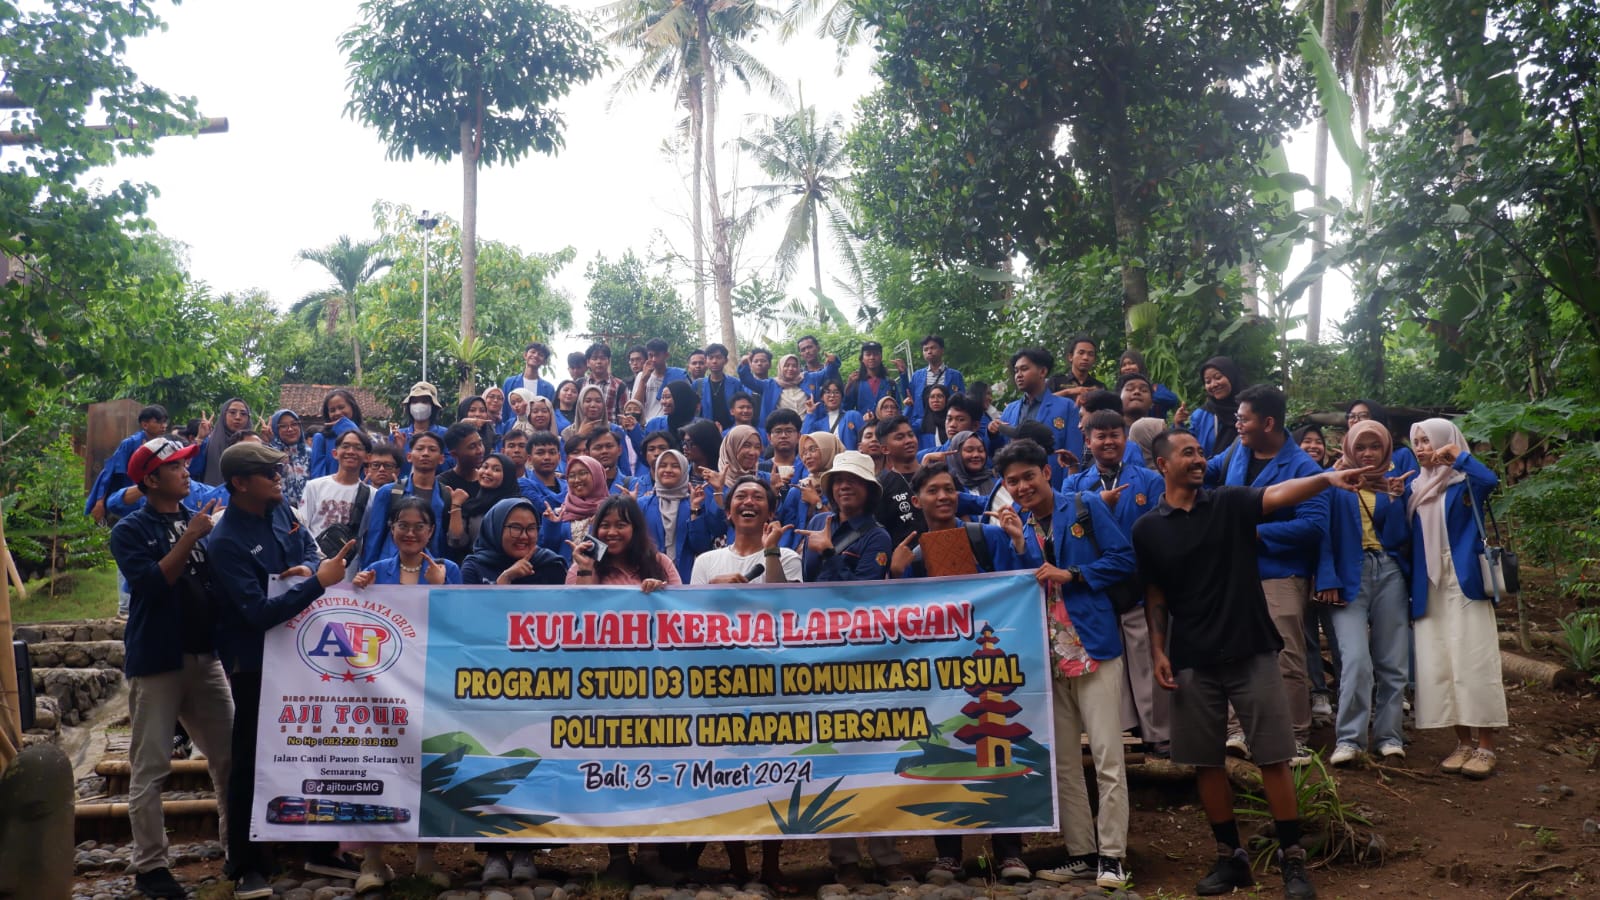 Mahasiswa DKV Poltek Harber Tegal Kunjungi Industri Kreatif di Bali